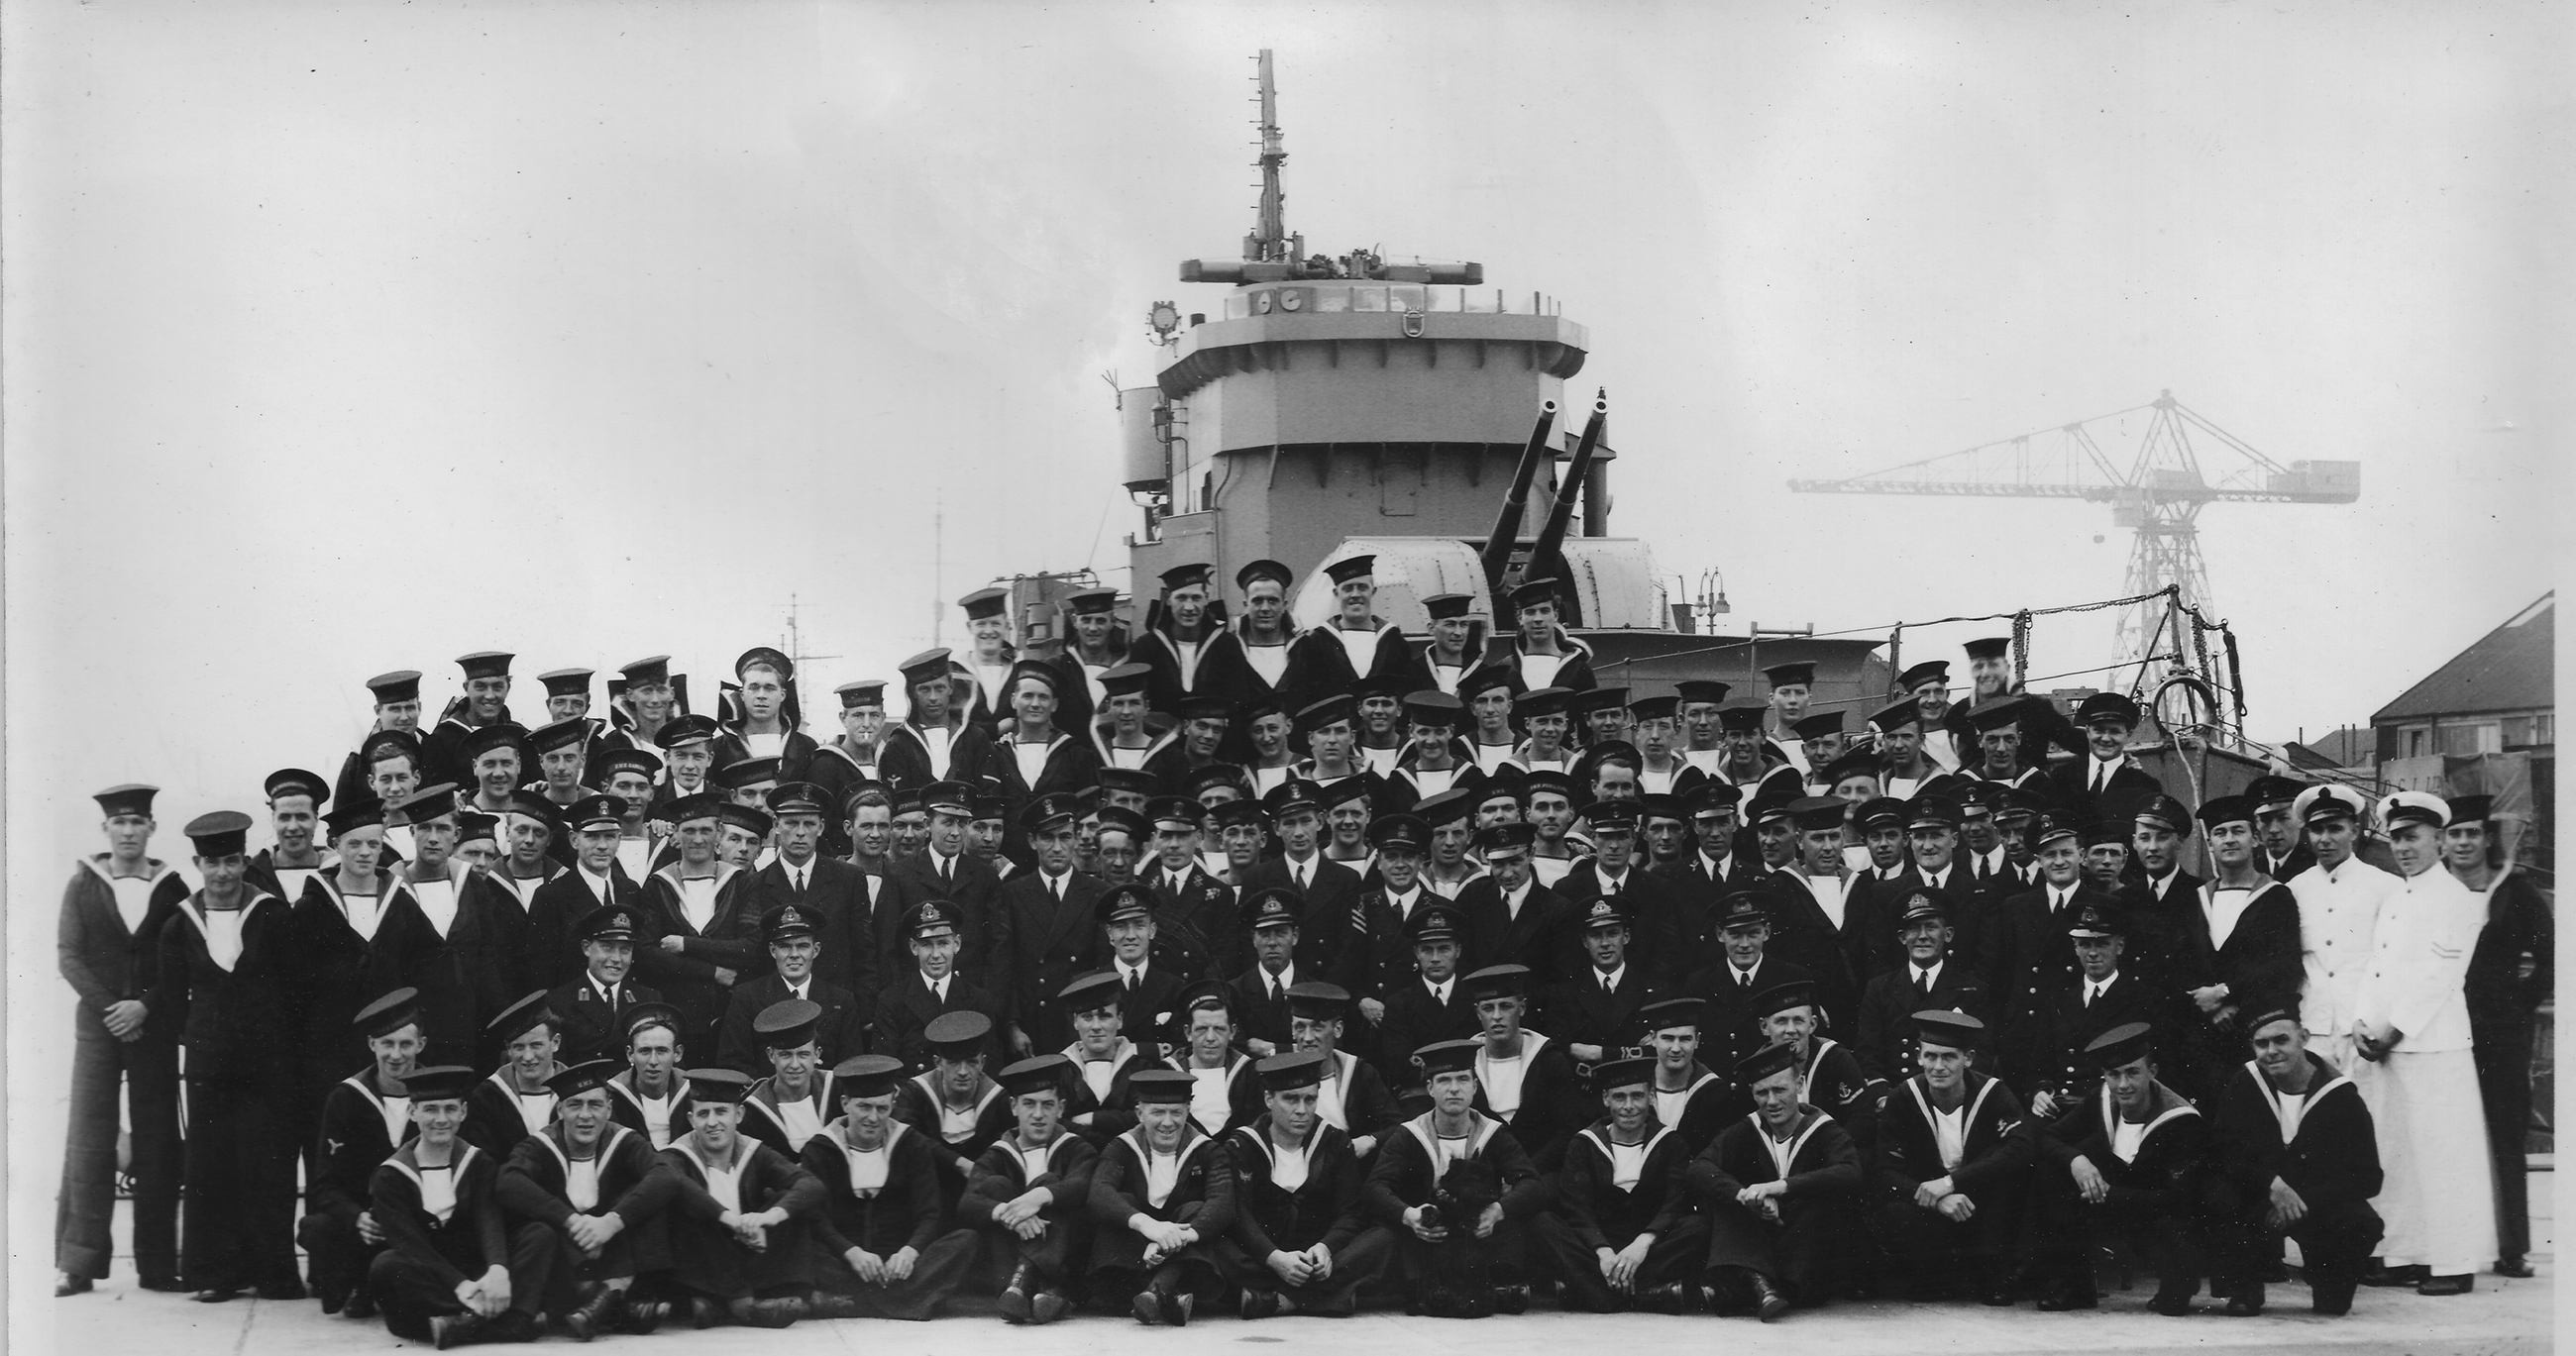 Vimiera Crew on quayside 1941